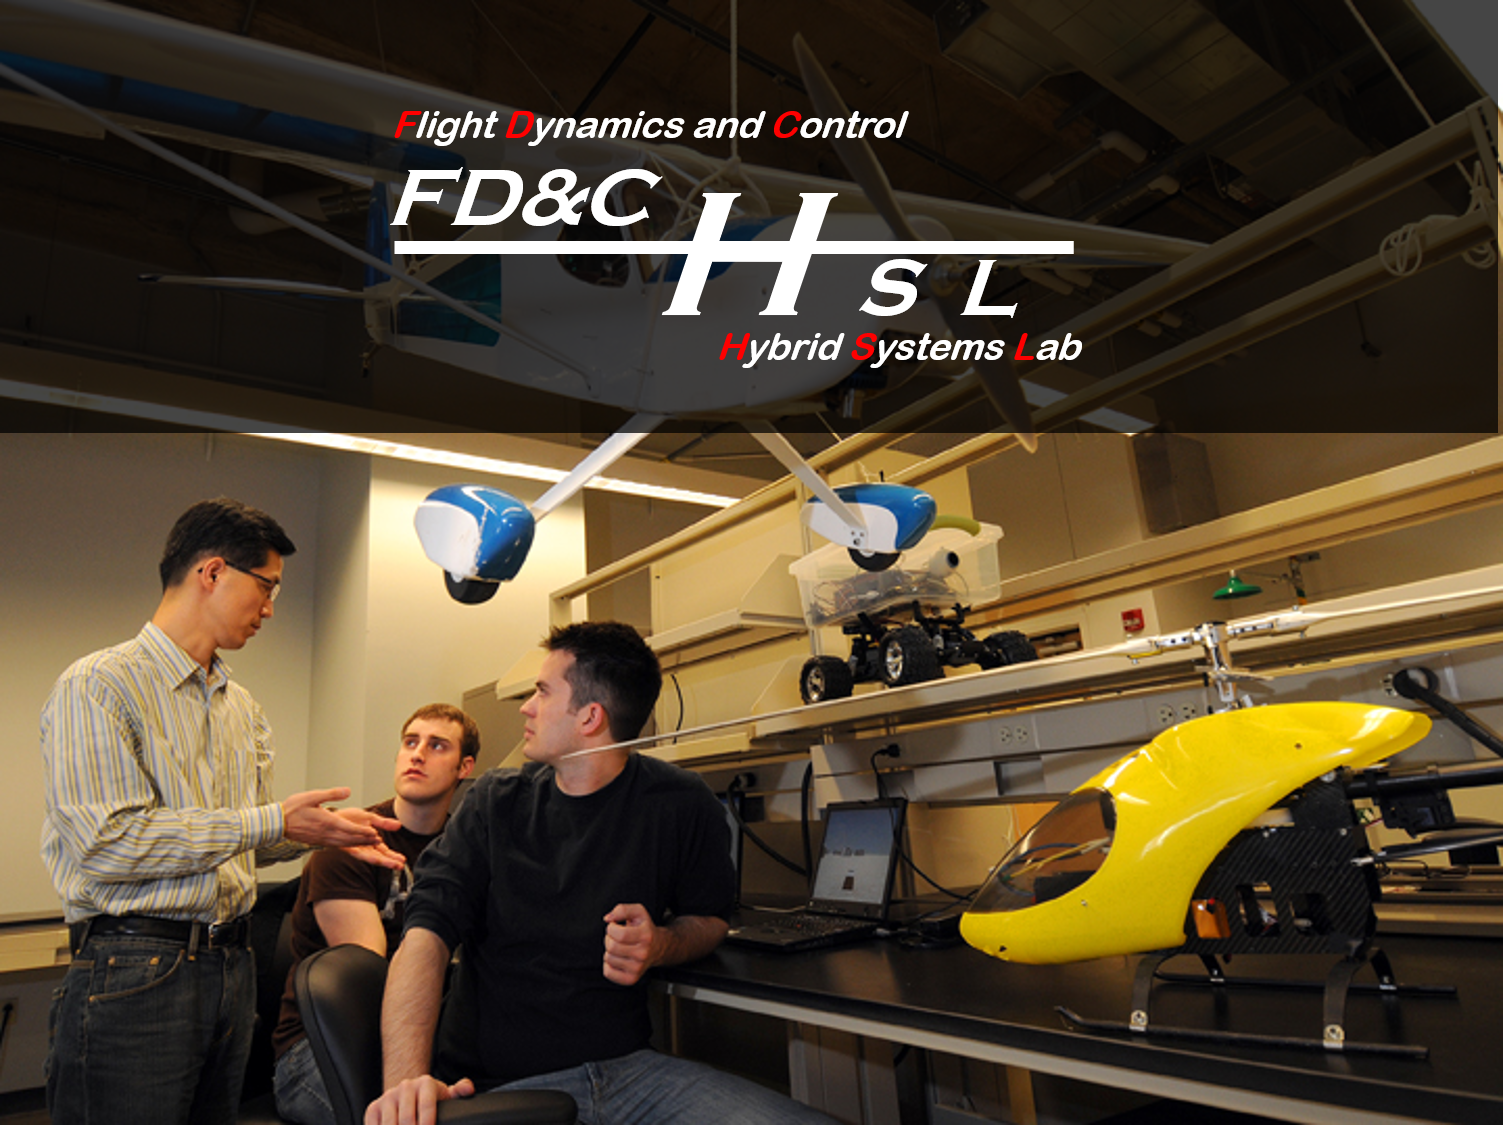 Flight Dynamics & Control/Hybrid Systems Lab